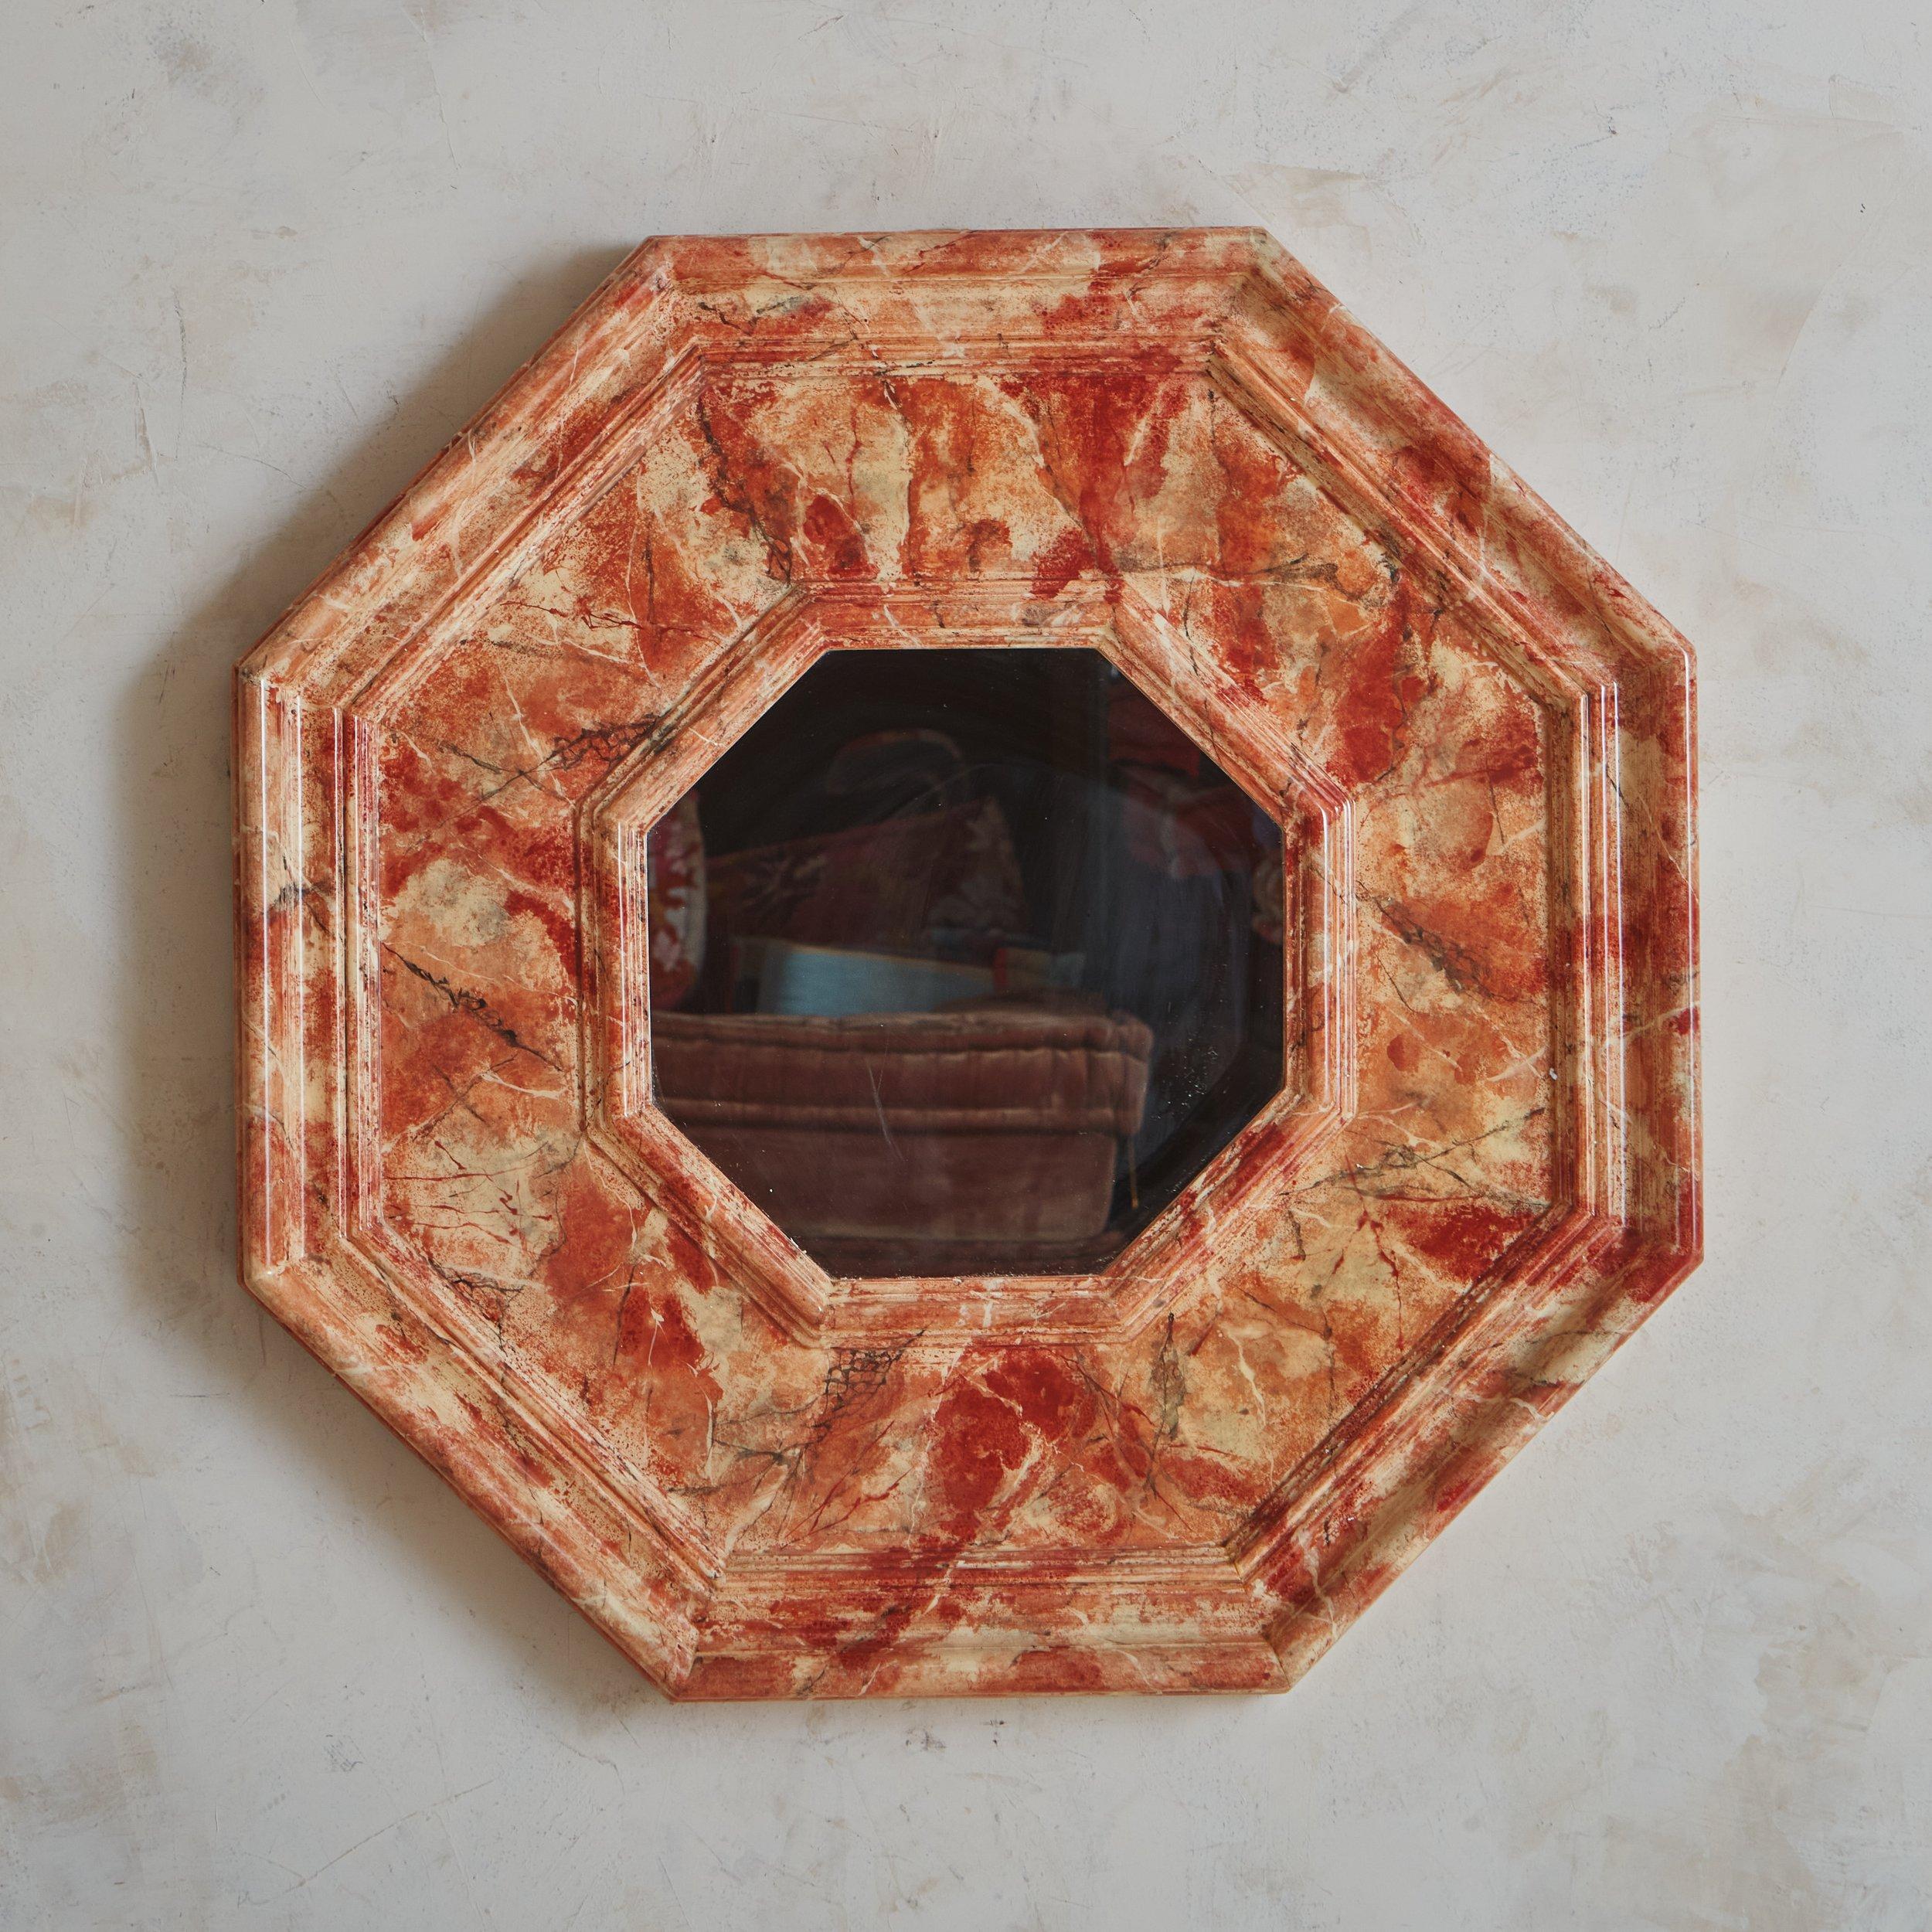 Miroir mural italien des années 1960 présentant un cadre hexagonal en bois avec une belle finition en faux marbre laqué dans une gamme de teintes corail, taupe et noir. Non marqué. Provenance : Italie, années 1960.
 

 DIMENSIONS : 31 